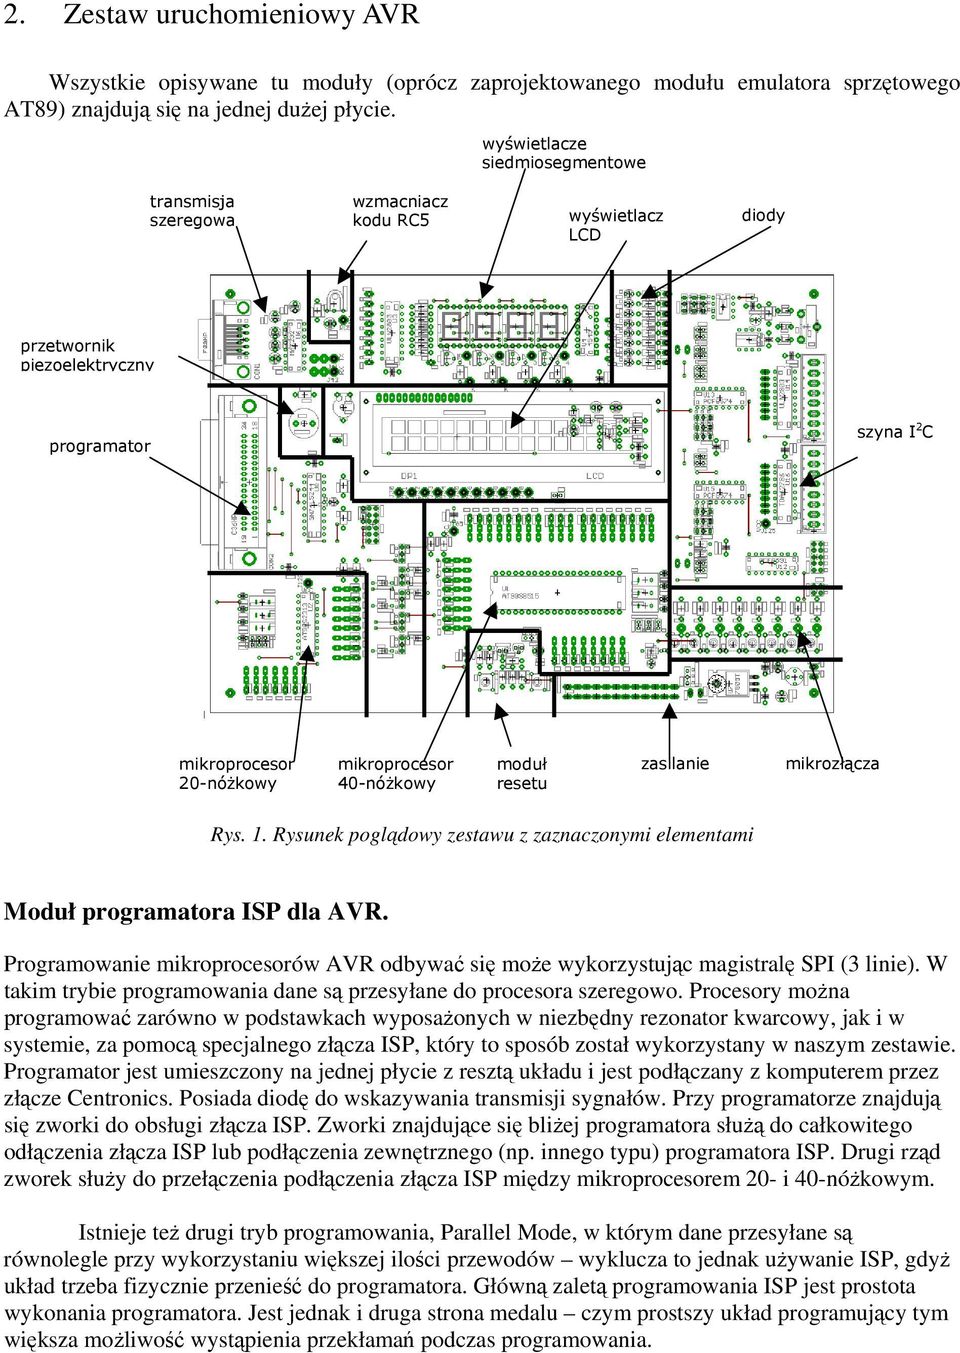 moduł resetu zasilanie mikrozłącza Rys. 1. Rysunek poglądowy zestawu z zaznaczonymi elementami Moduł programatora ISP dla AVR.